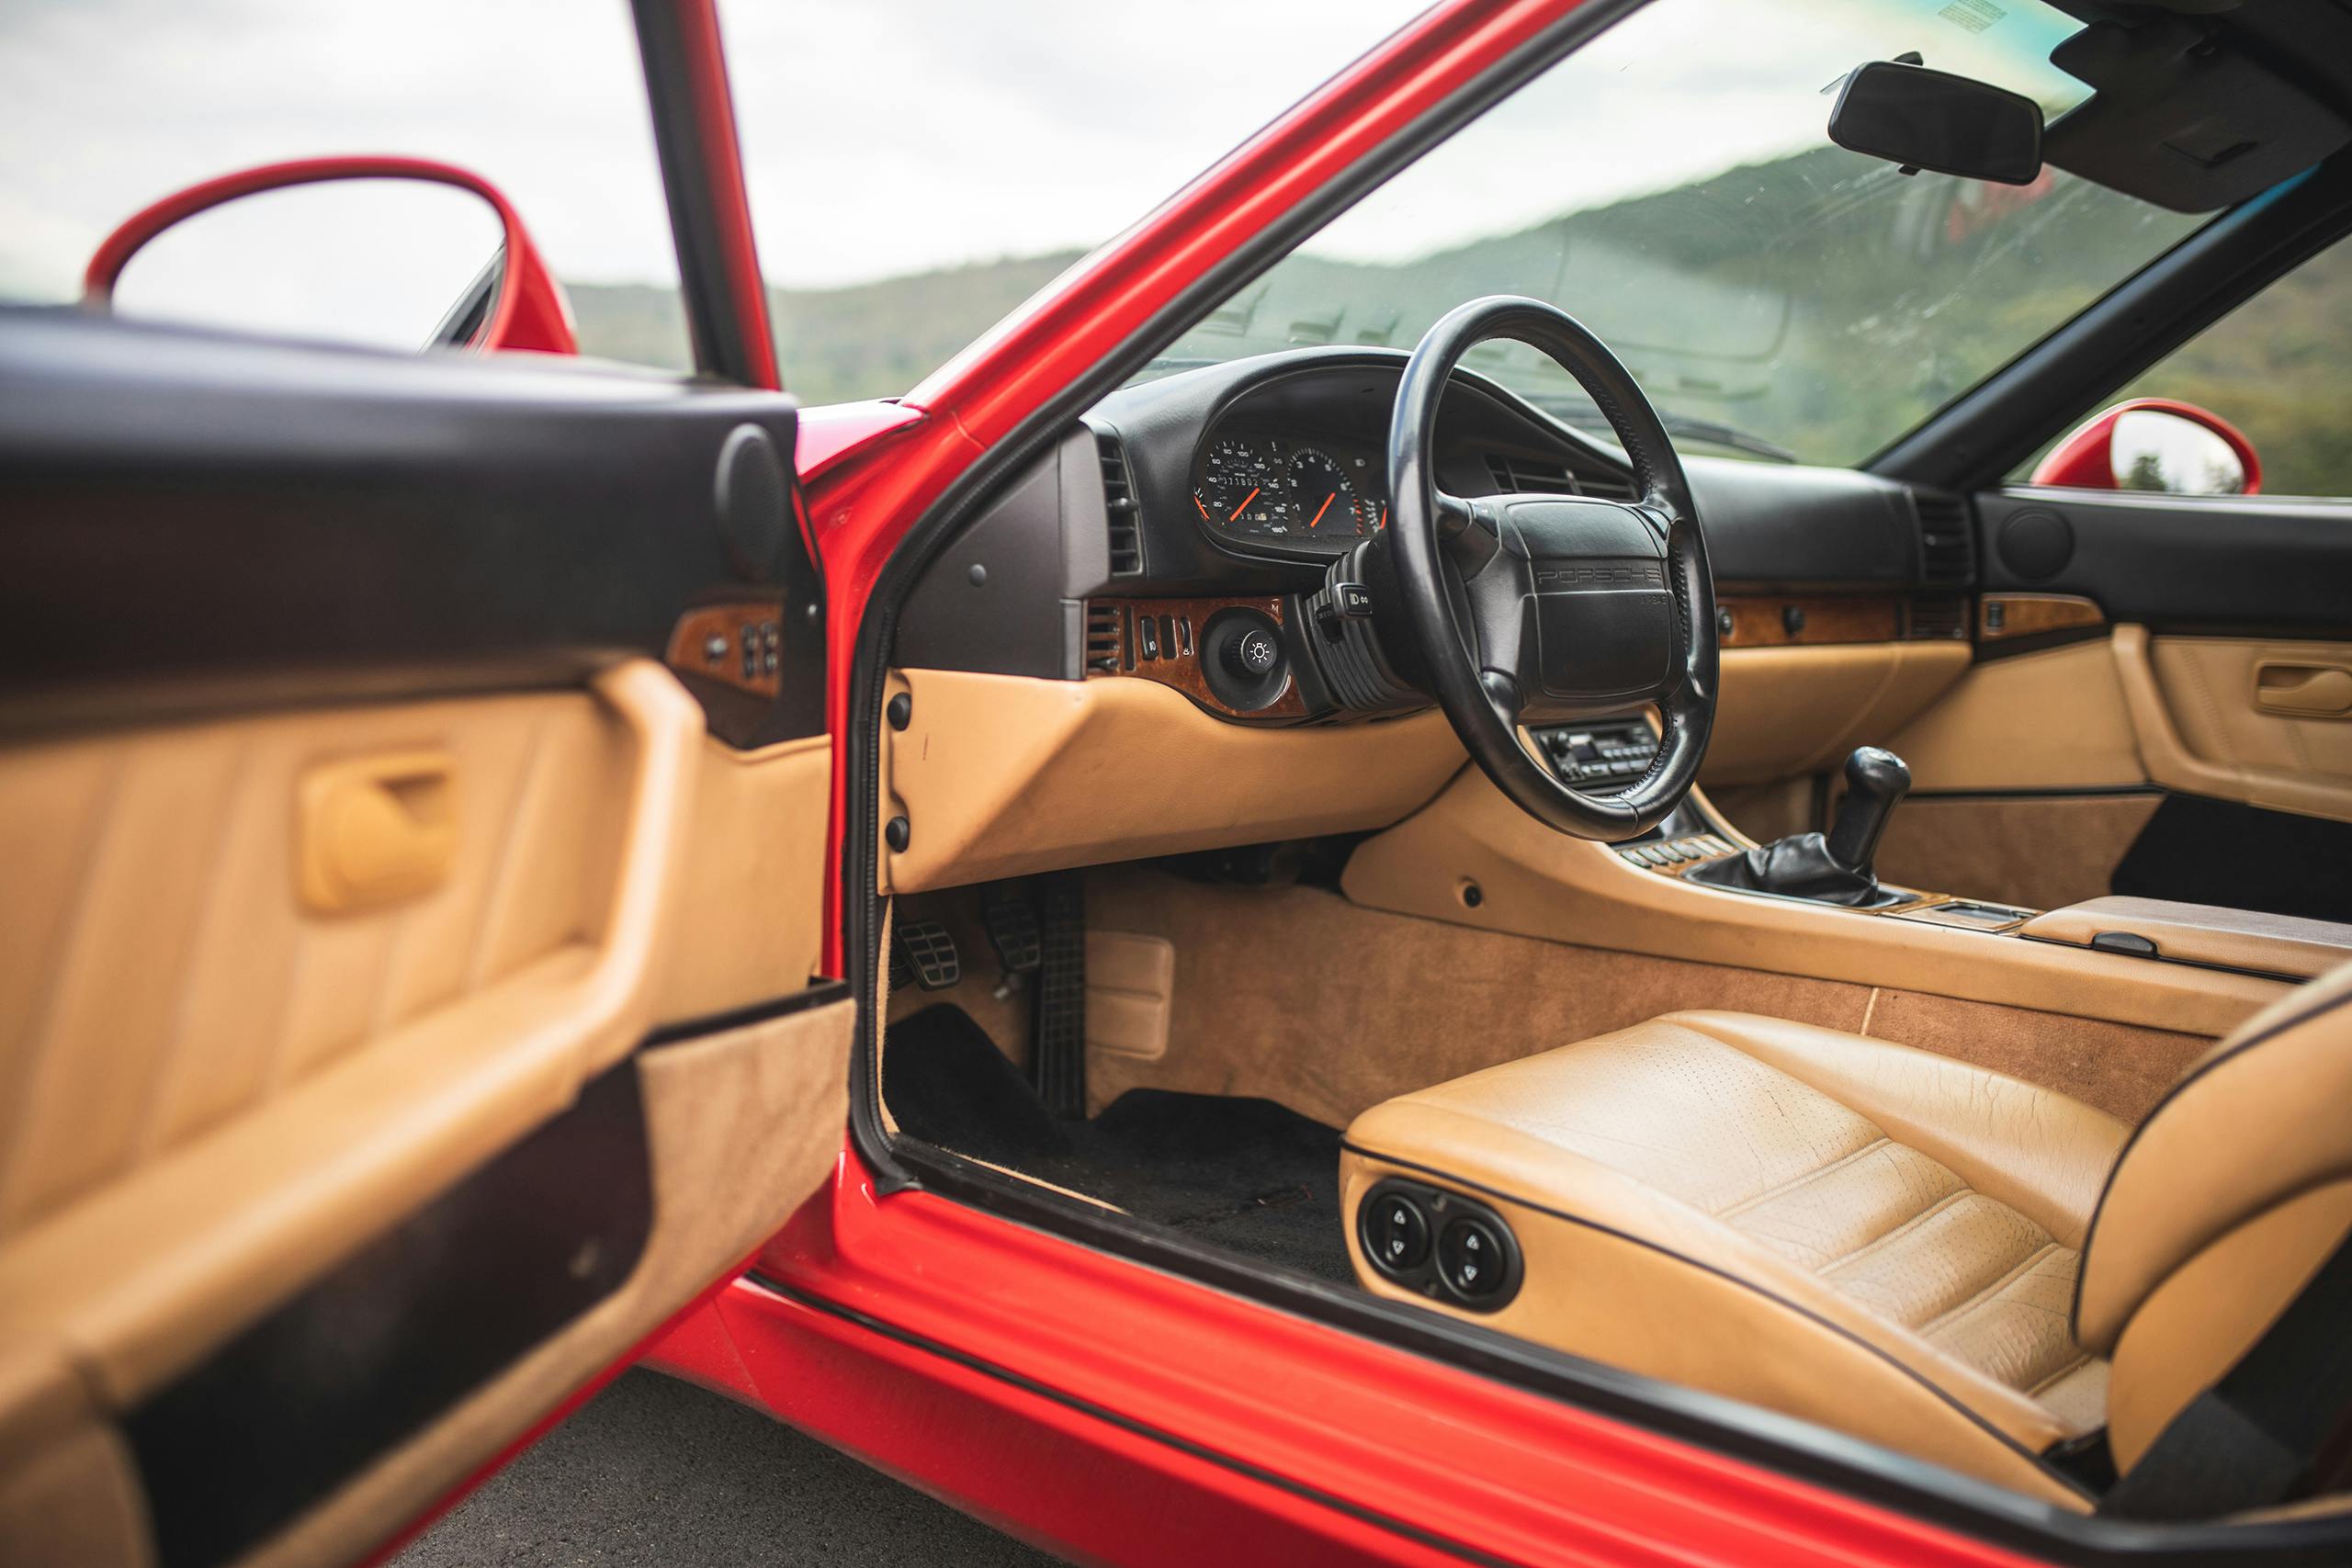 1993 Porsche 968 interior front angle driver door open